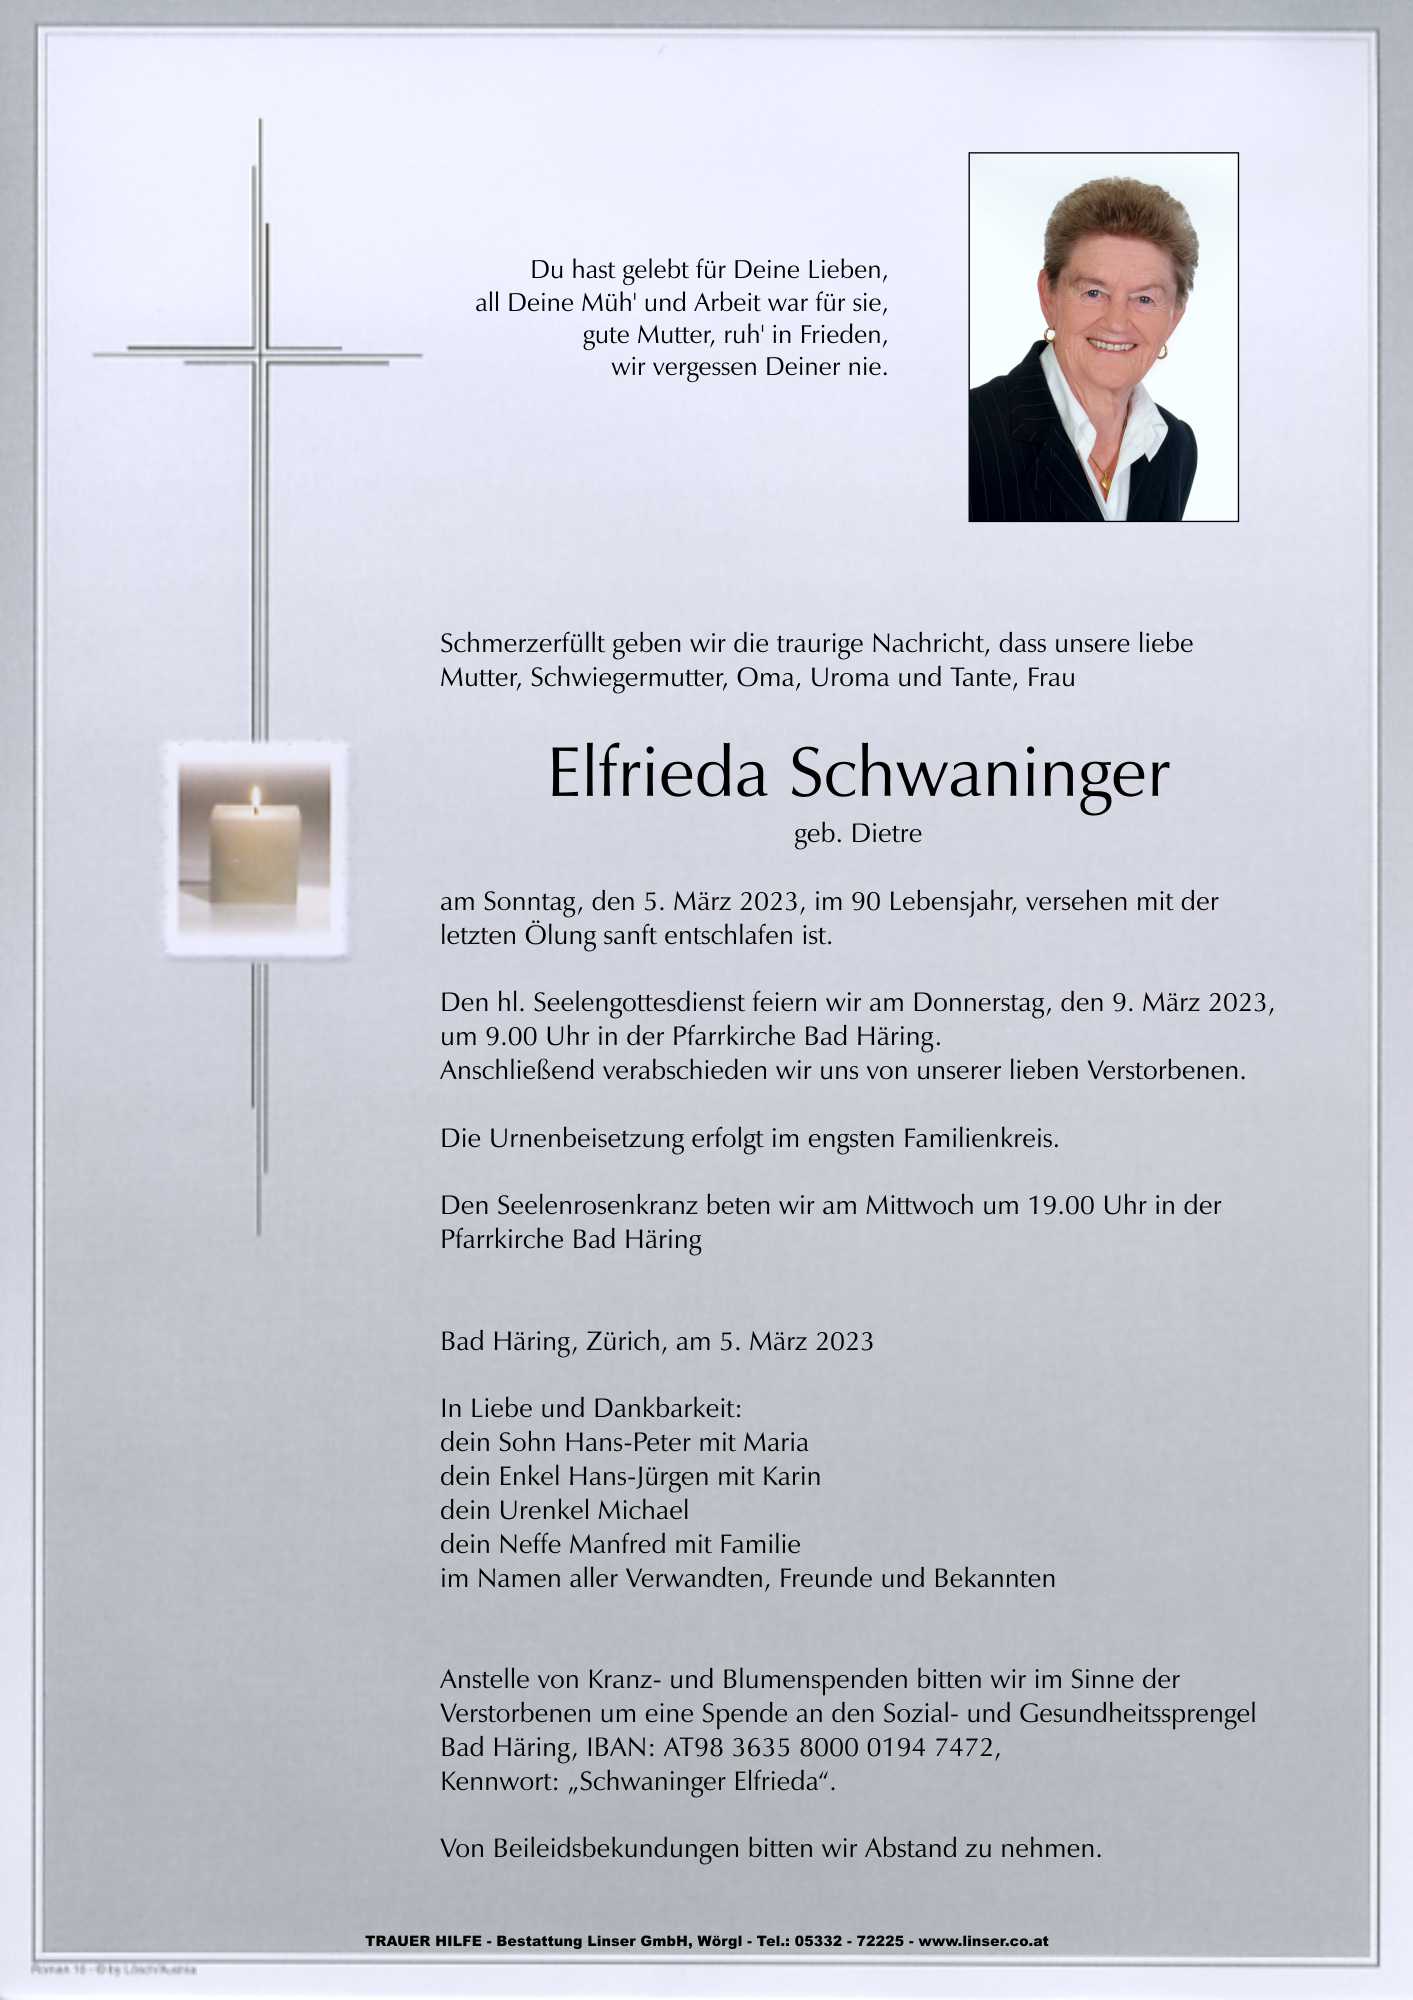 Elfrieda Schwaninger